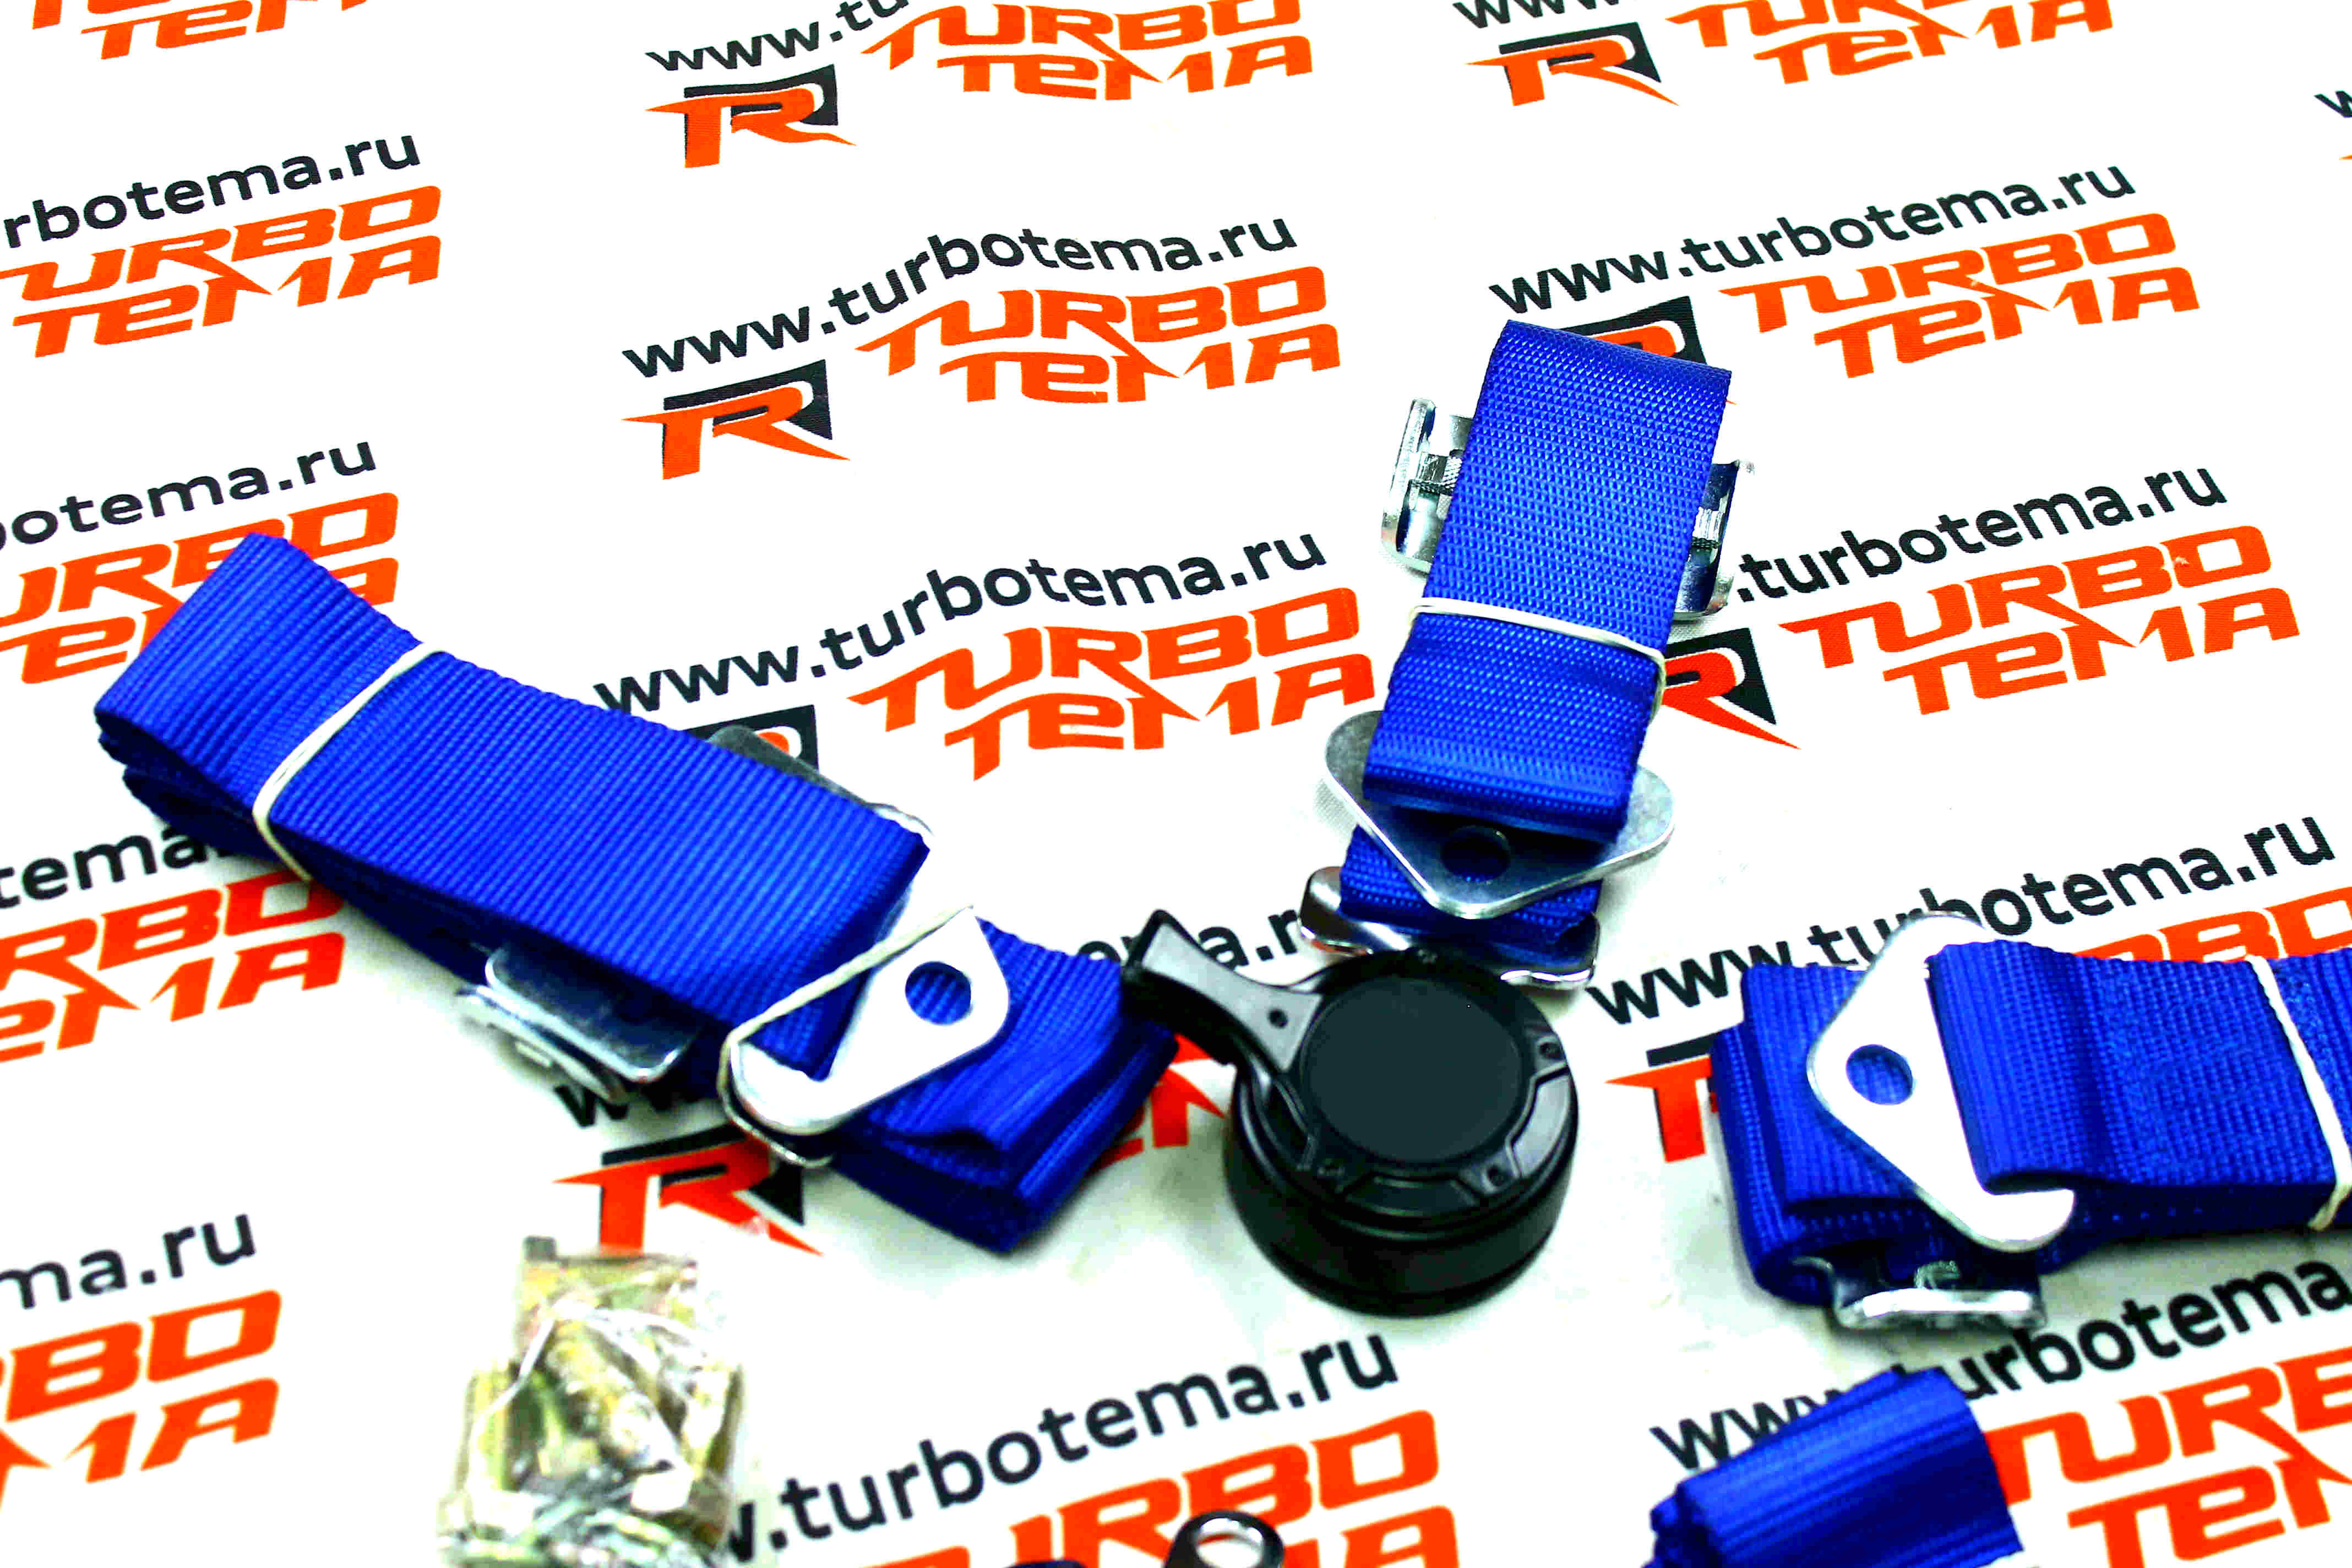 Ремни безопасности "TURBOTEMA" 6-х точечные, 2" ширина, быстросъемные (синие) JBR4001-6. Фото �3